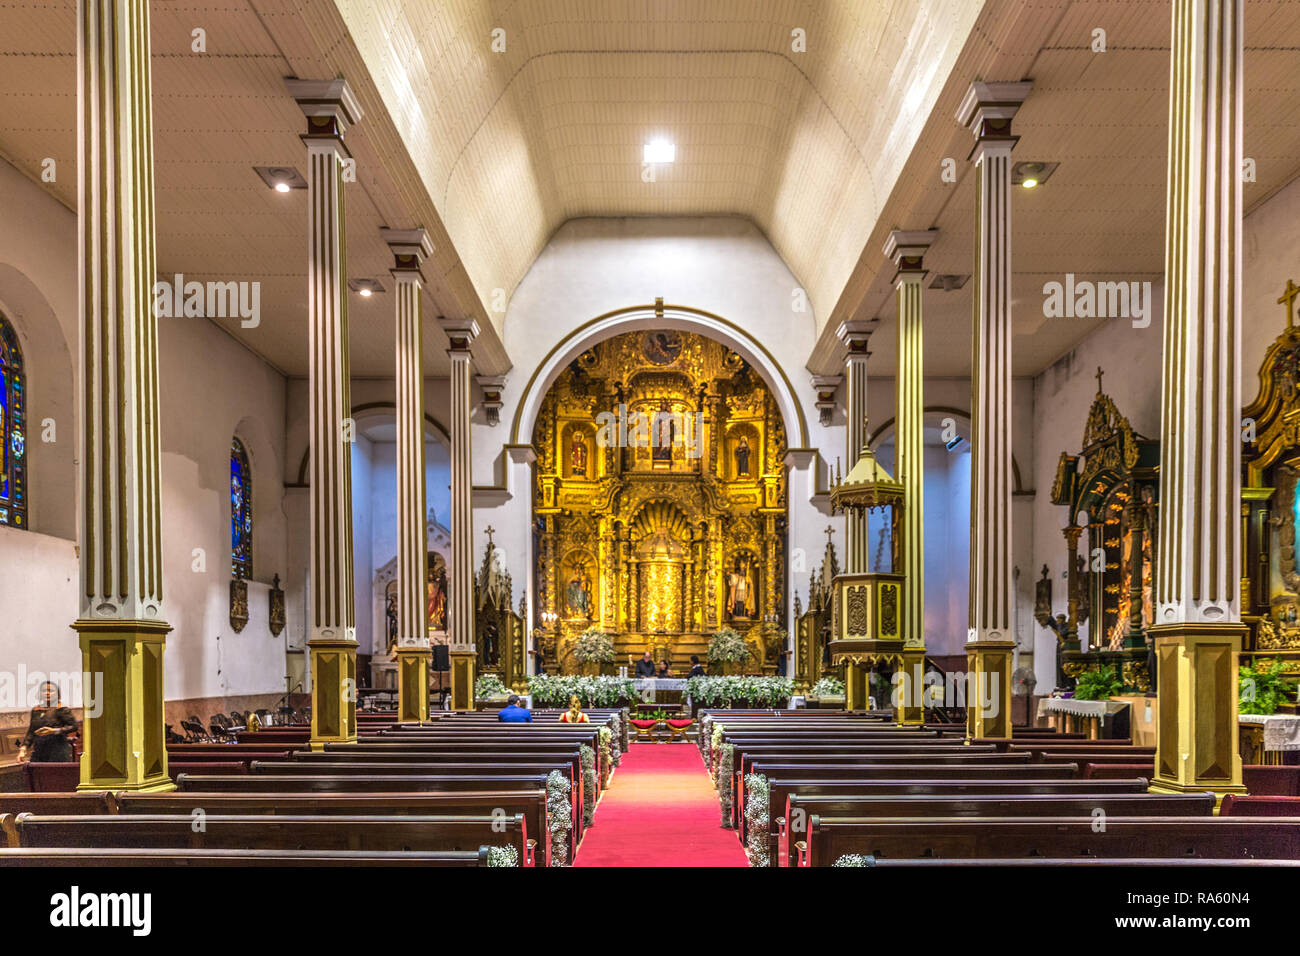 Panama City, Panama - Mar 10th 2018 - The interior of a catholic church at the Casco Viejo area in Panama City in Panama Stock Photo